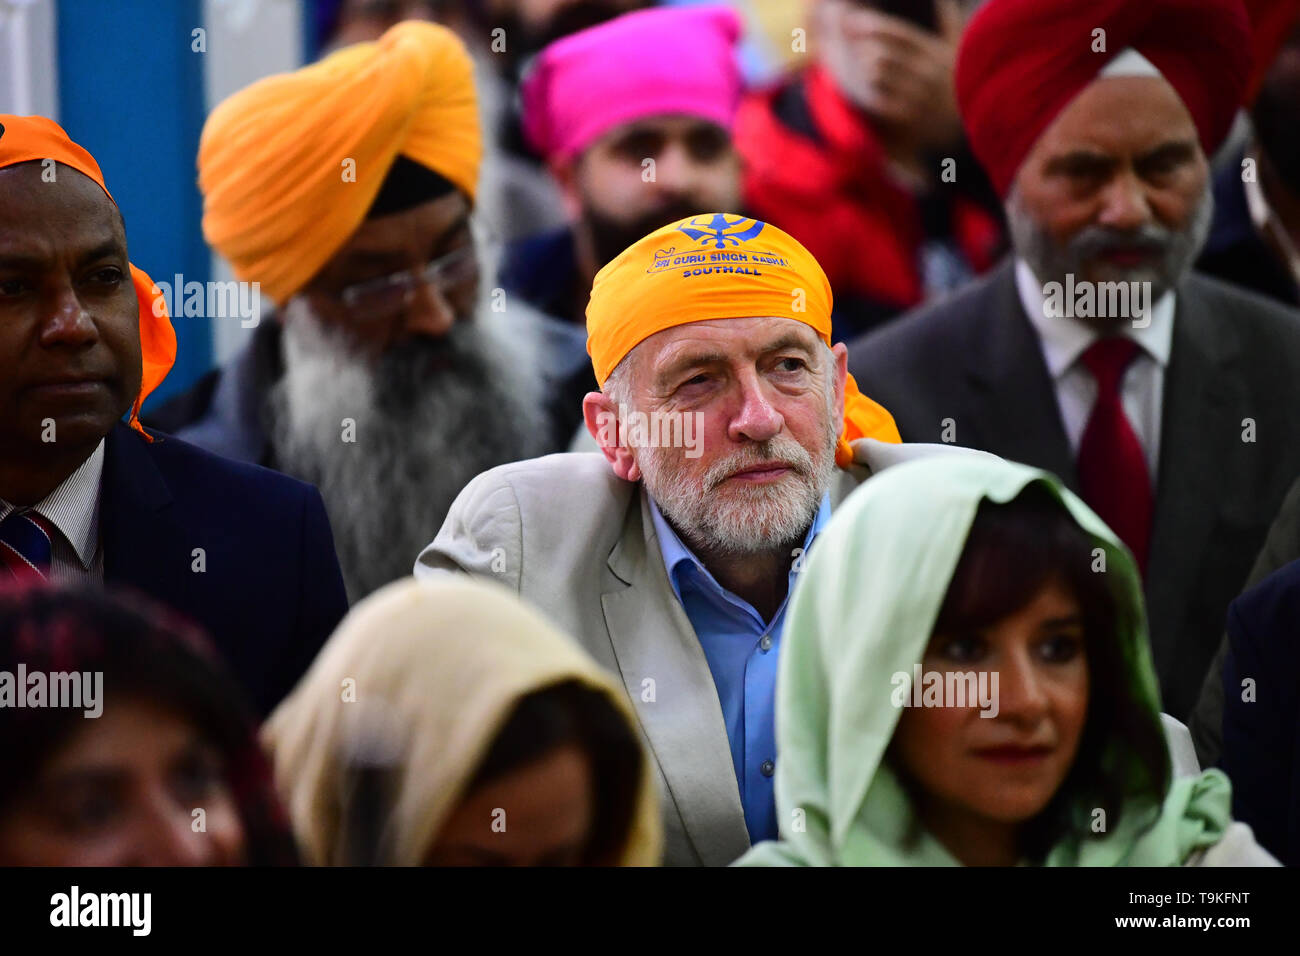 Leader du travail Jeremy Corbyn et son épouse Laura Alvarez (en bas à droite) au cours d'une visite au Gurdwara Sri Guru Singh Sabha à Southall. Banque D'Images